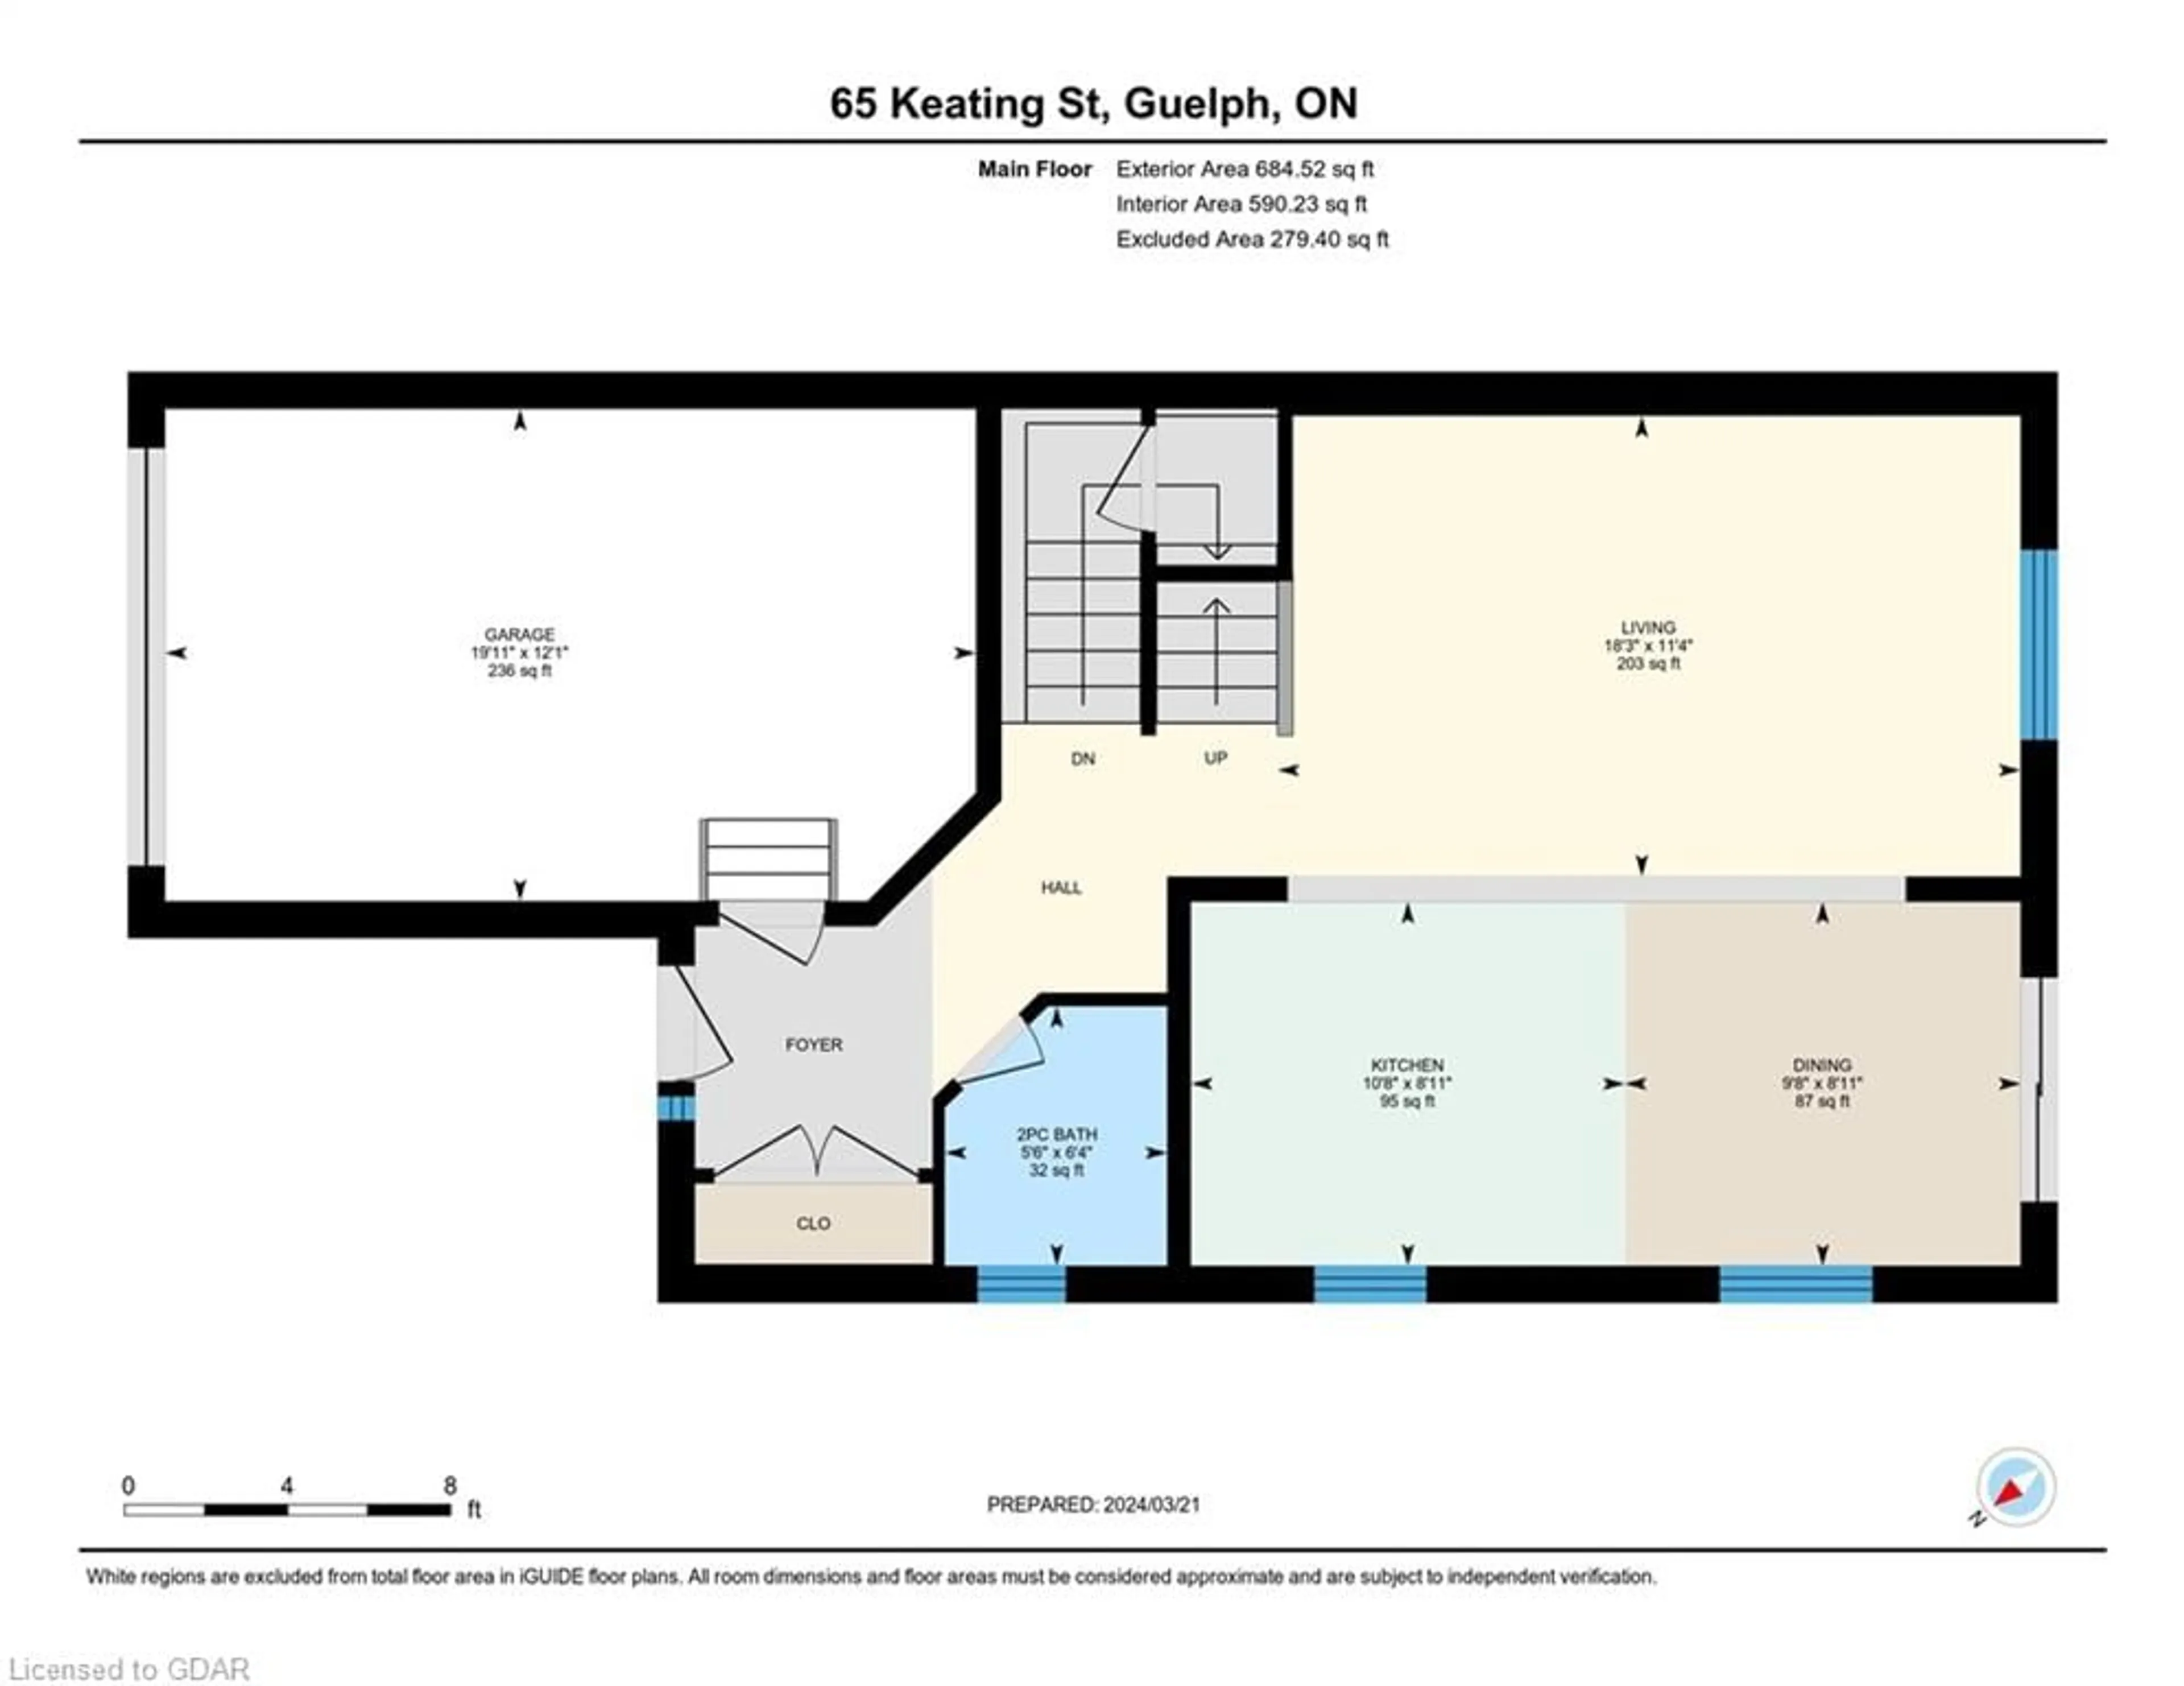 Floor plan for 65 Keating St, Guelph Ontario N1E 0S1